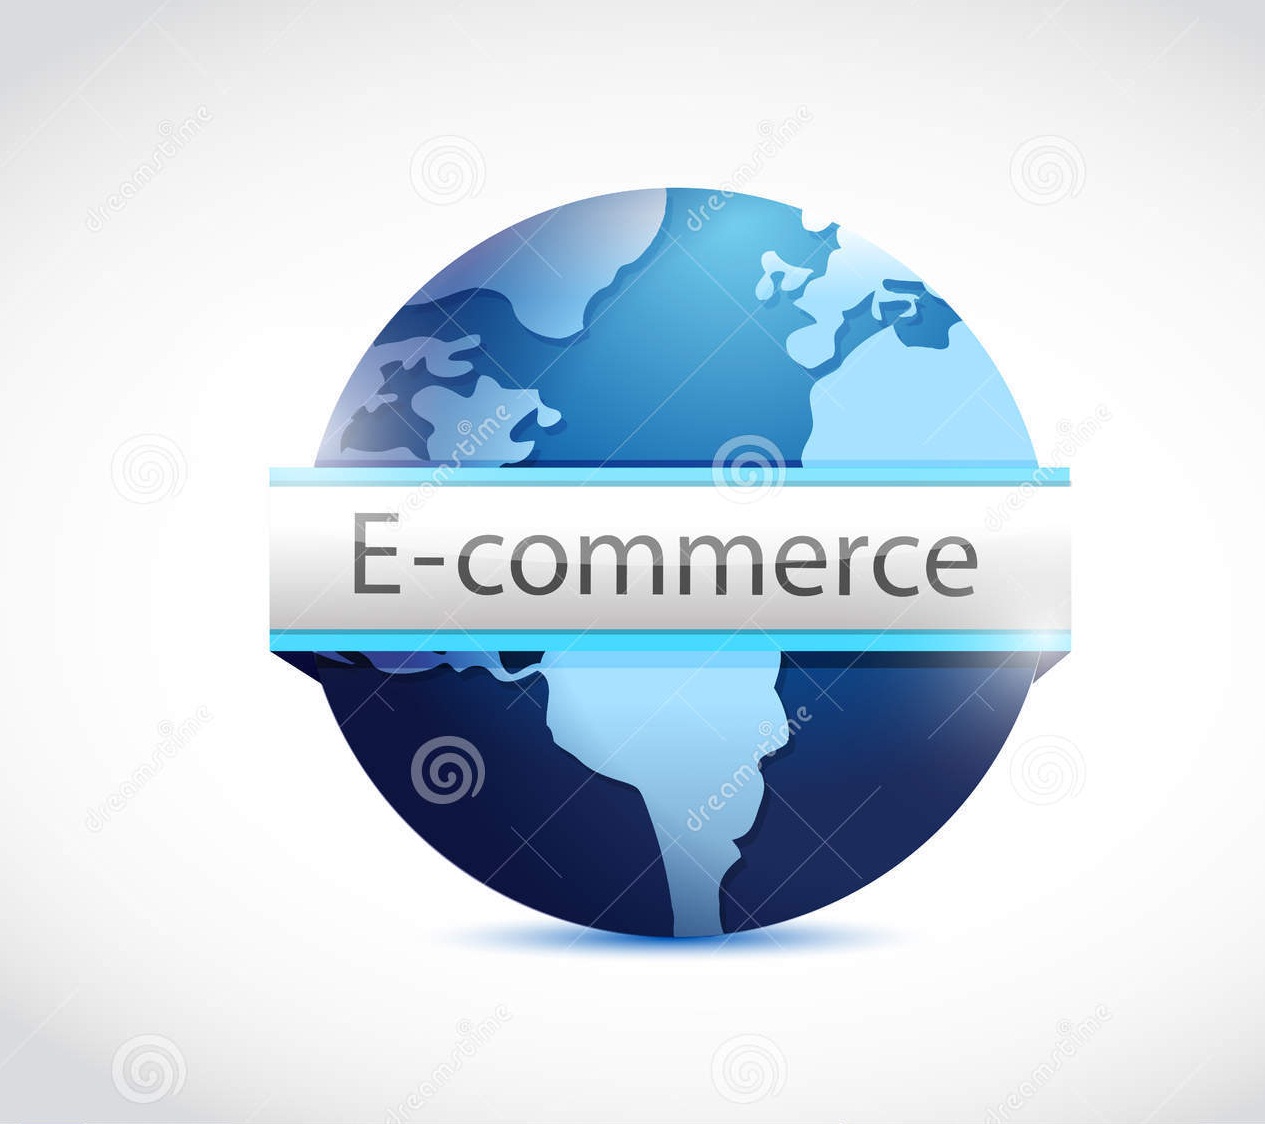 Управление e-commerce – электронная коммерция и всё, что с ней связано / хабр